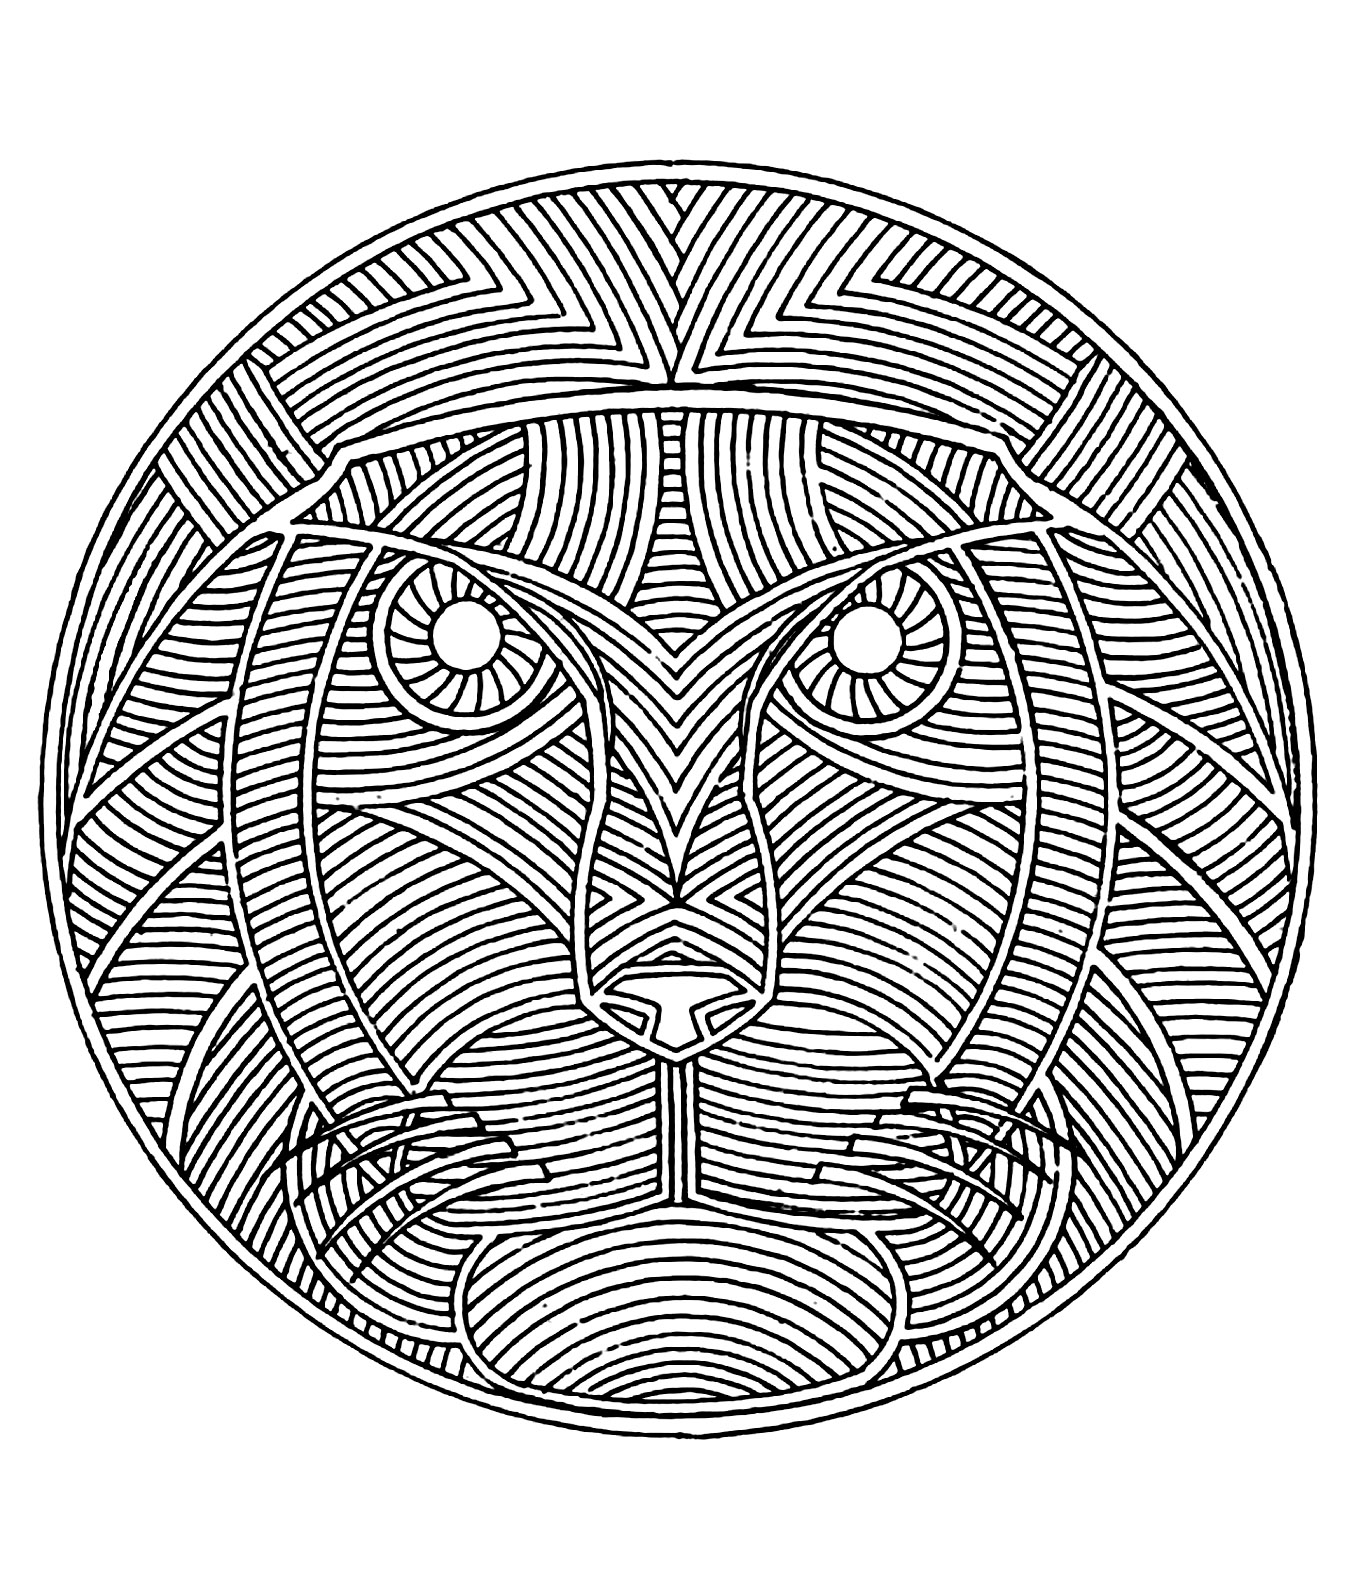 Un Mandala mettant en scène une tête de lion, pour ceux qui préfèrent mettre en couleur des éléments concrets et vivants.